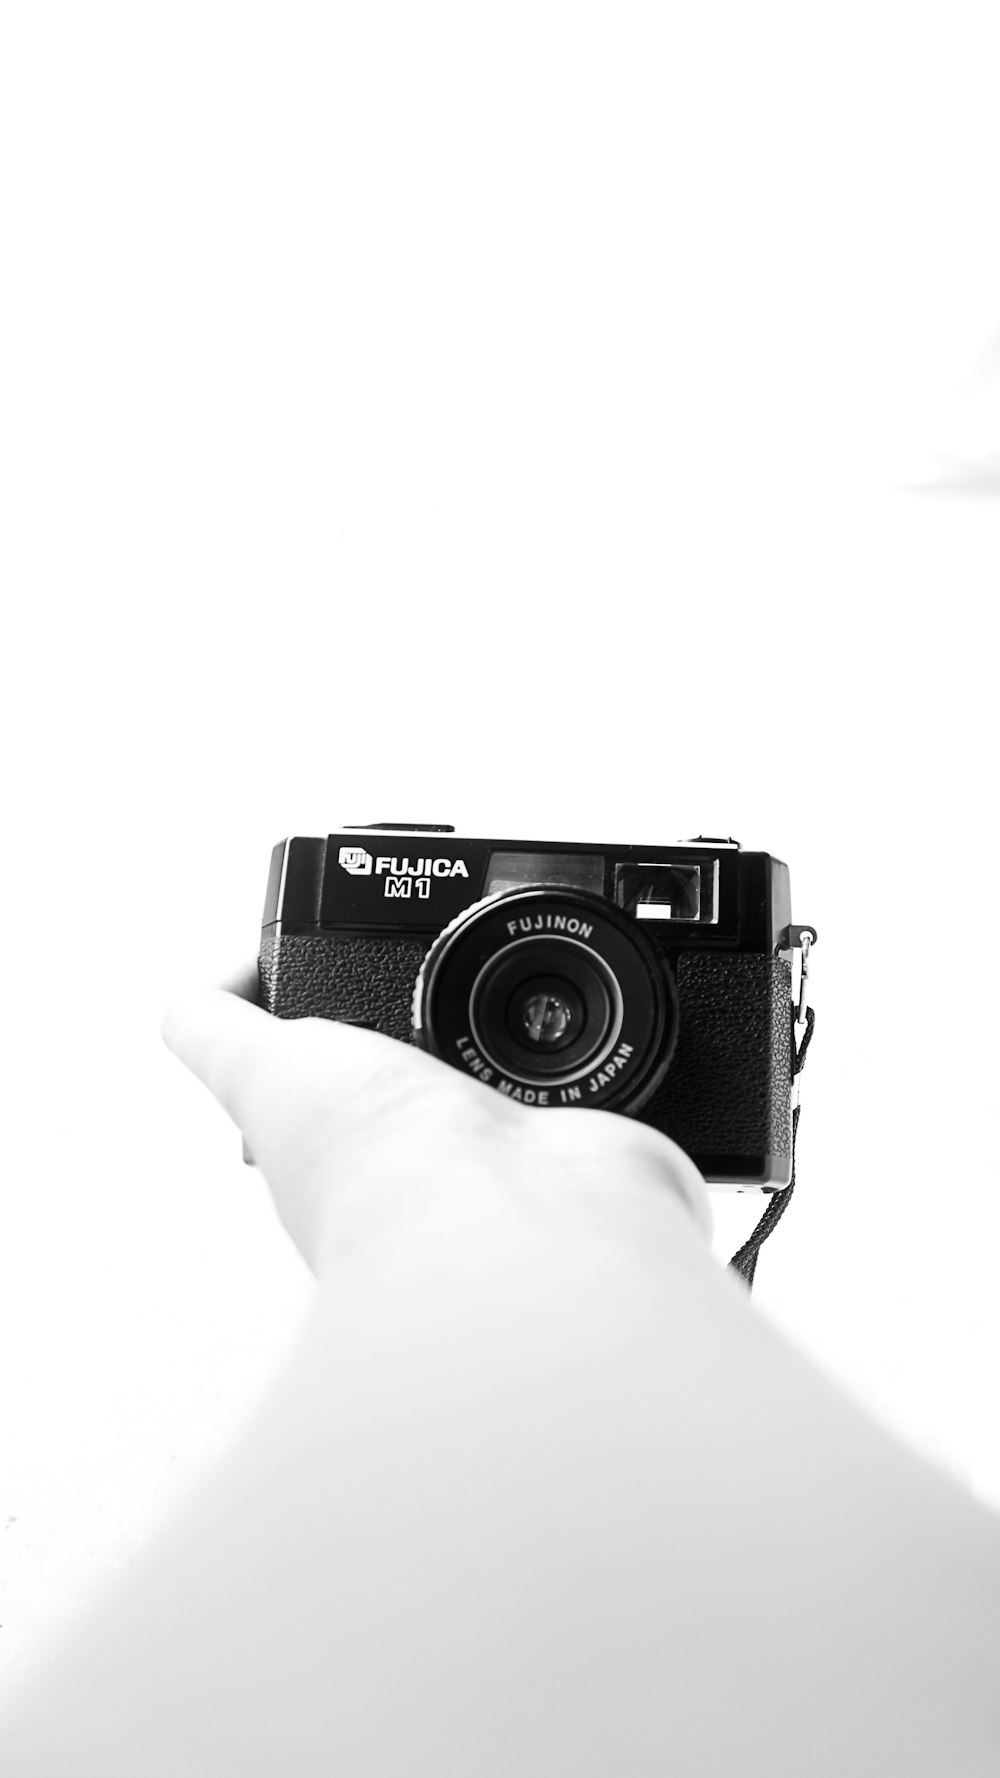 una foto in bianco e nero di una persona che tiene in mano una macchina fotografica